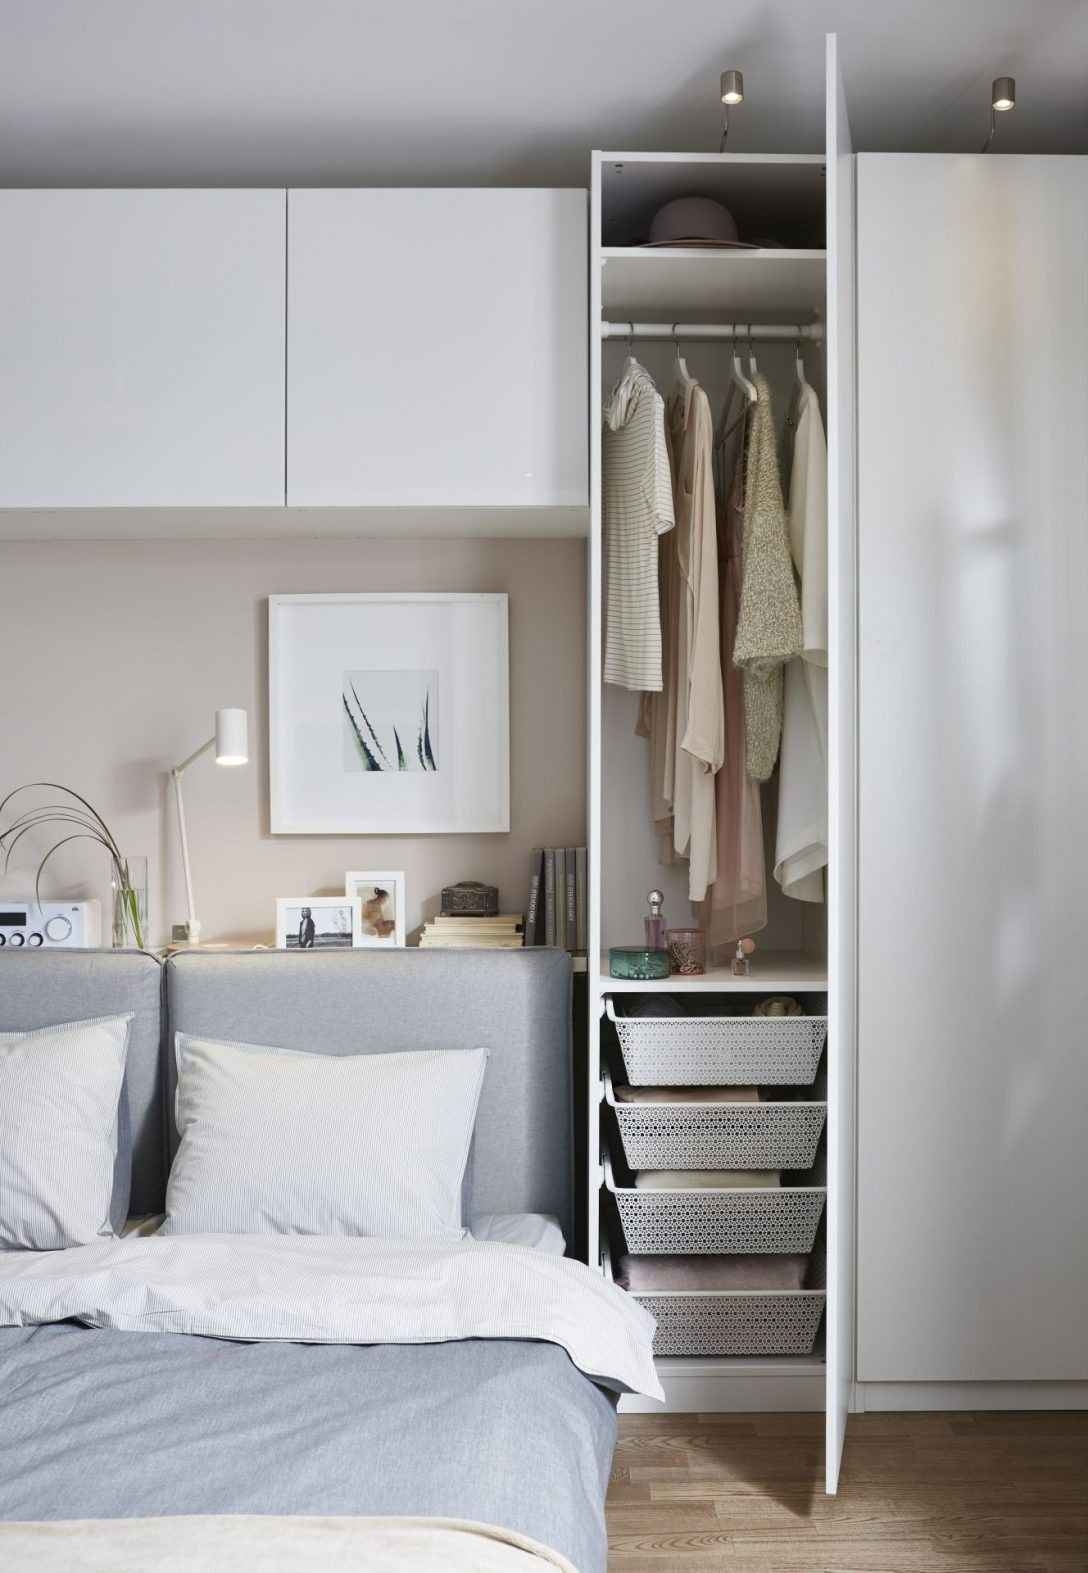 Hängeschrank Schlafzimmer Ikea | Small Bedroom Wardrobe, Diy throughout Ikea Oberschrank Schlafzimmer